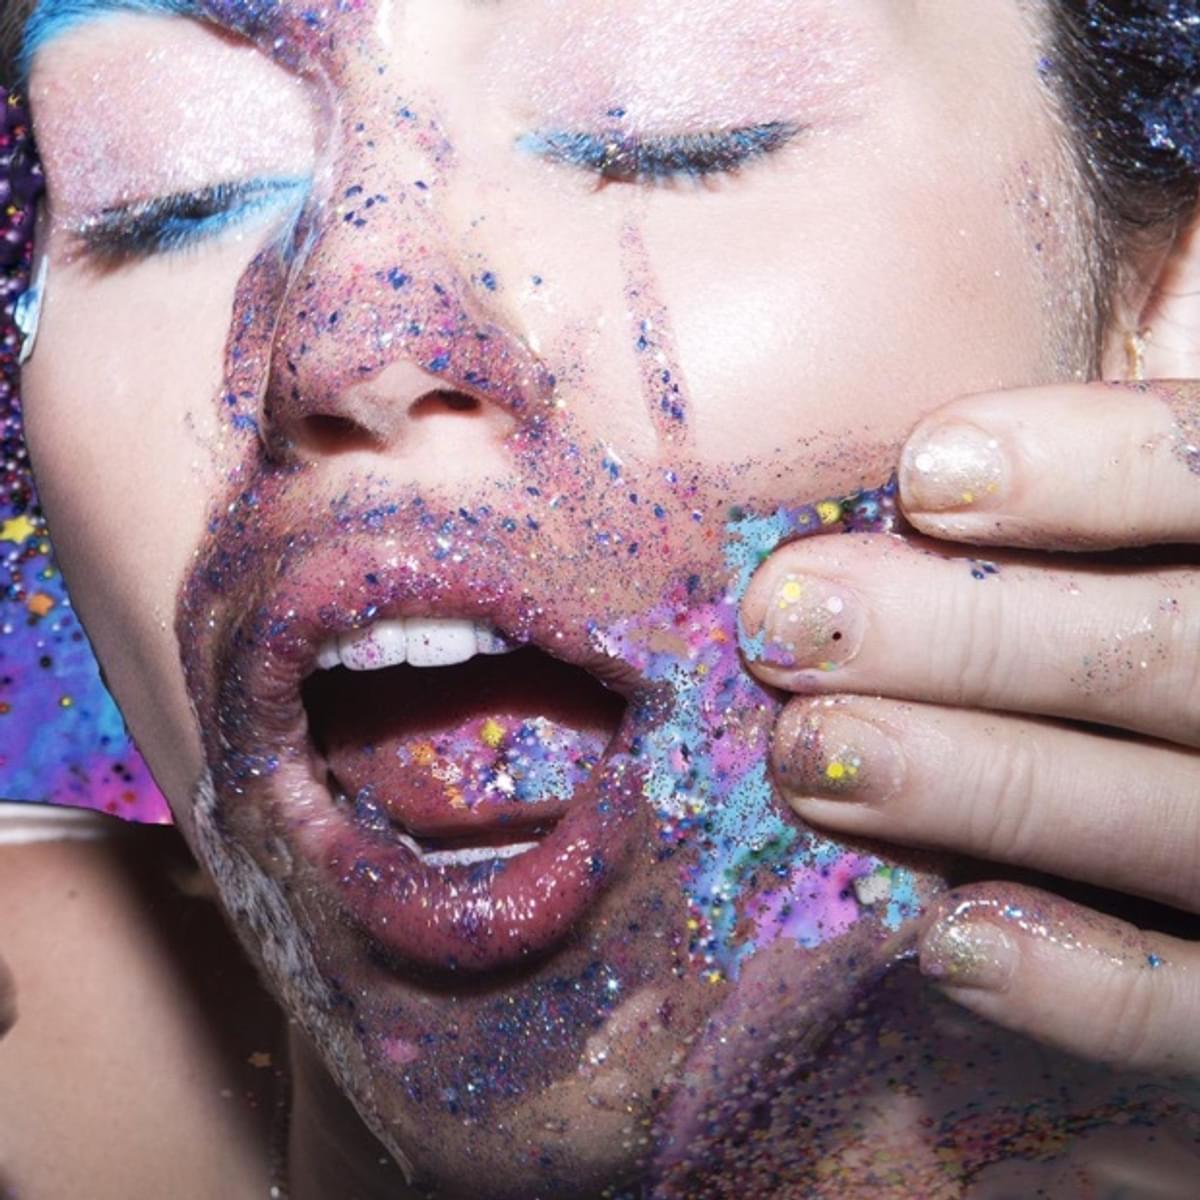 Miley vmas album